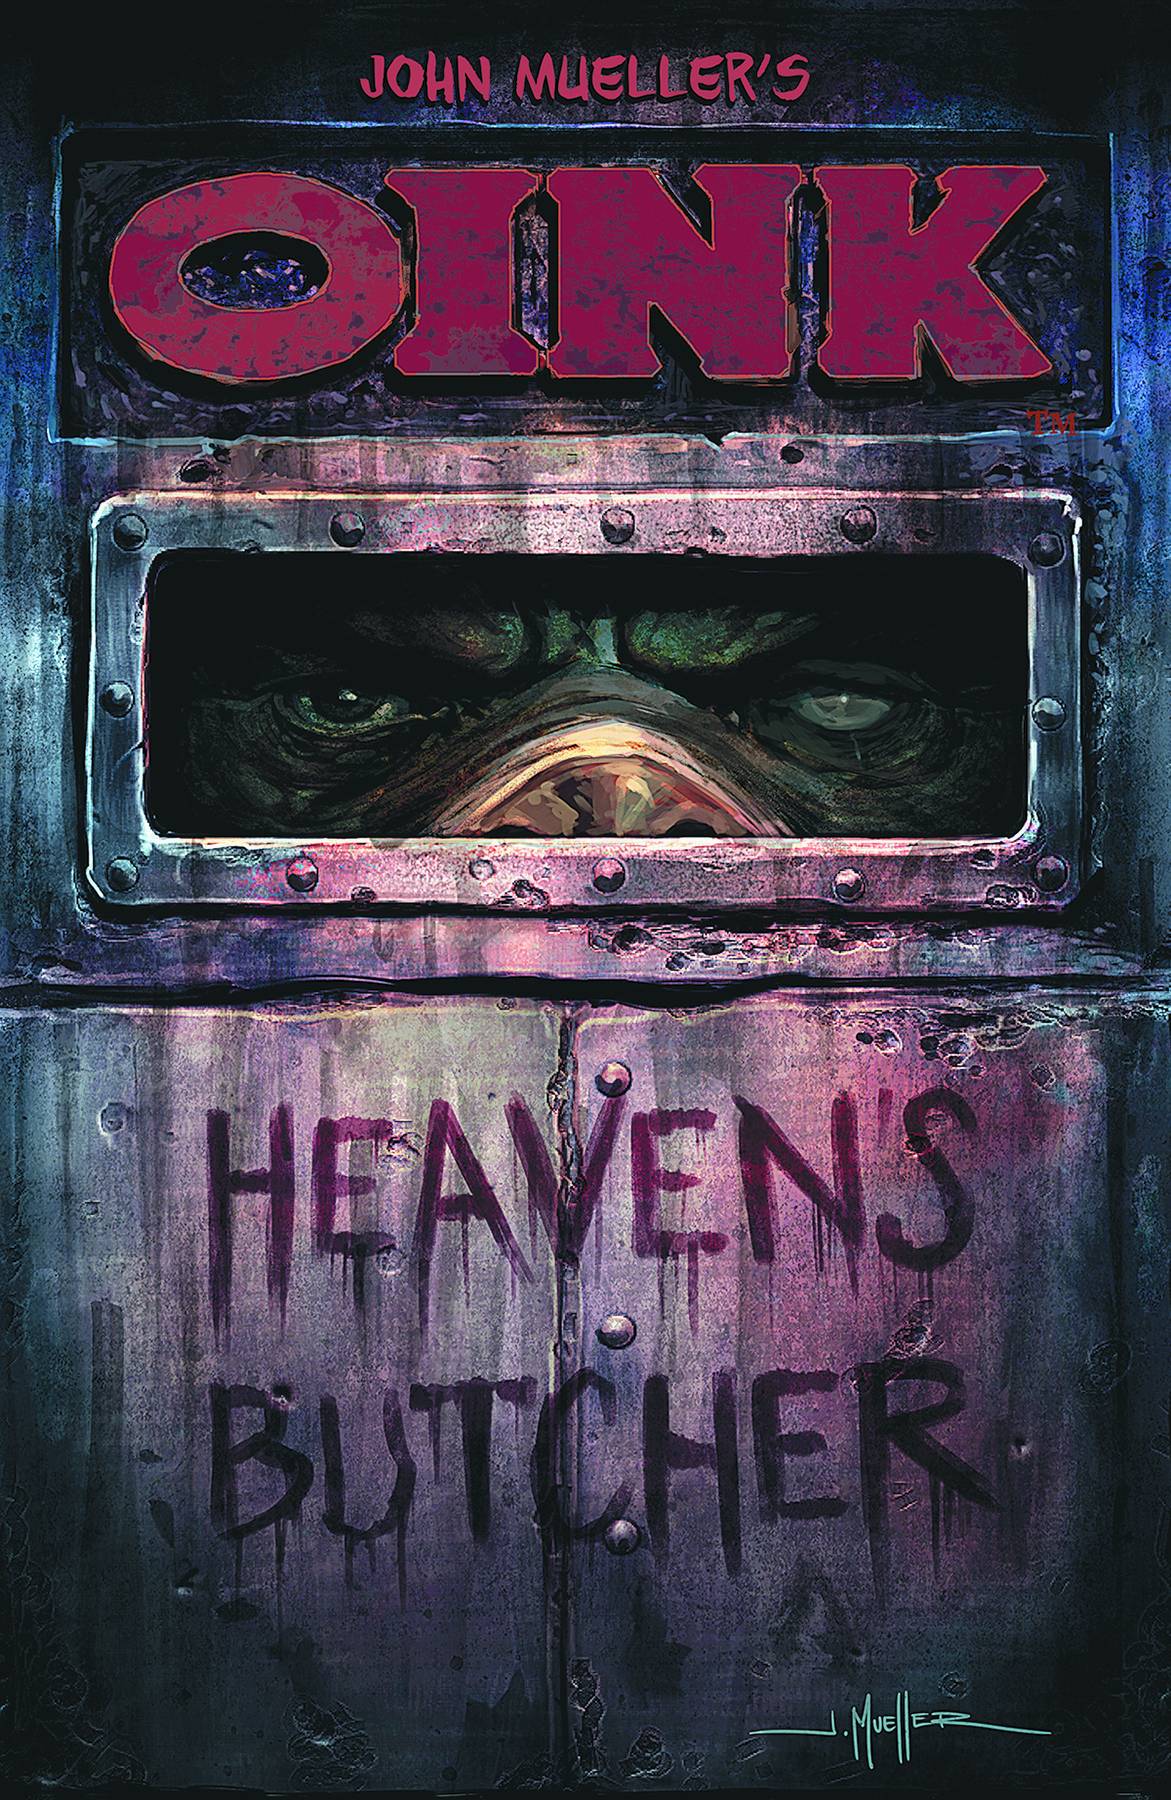 Oink Heavens Butcher Graphic Novel